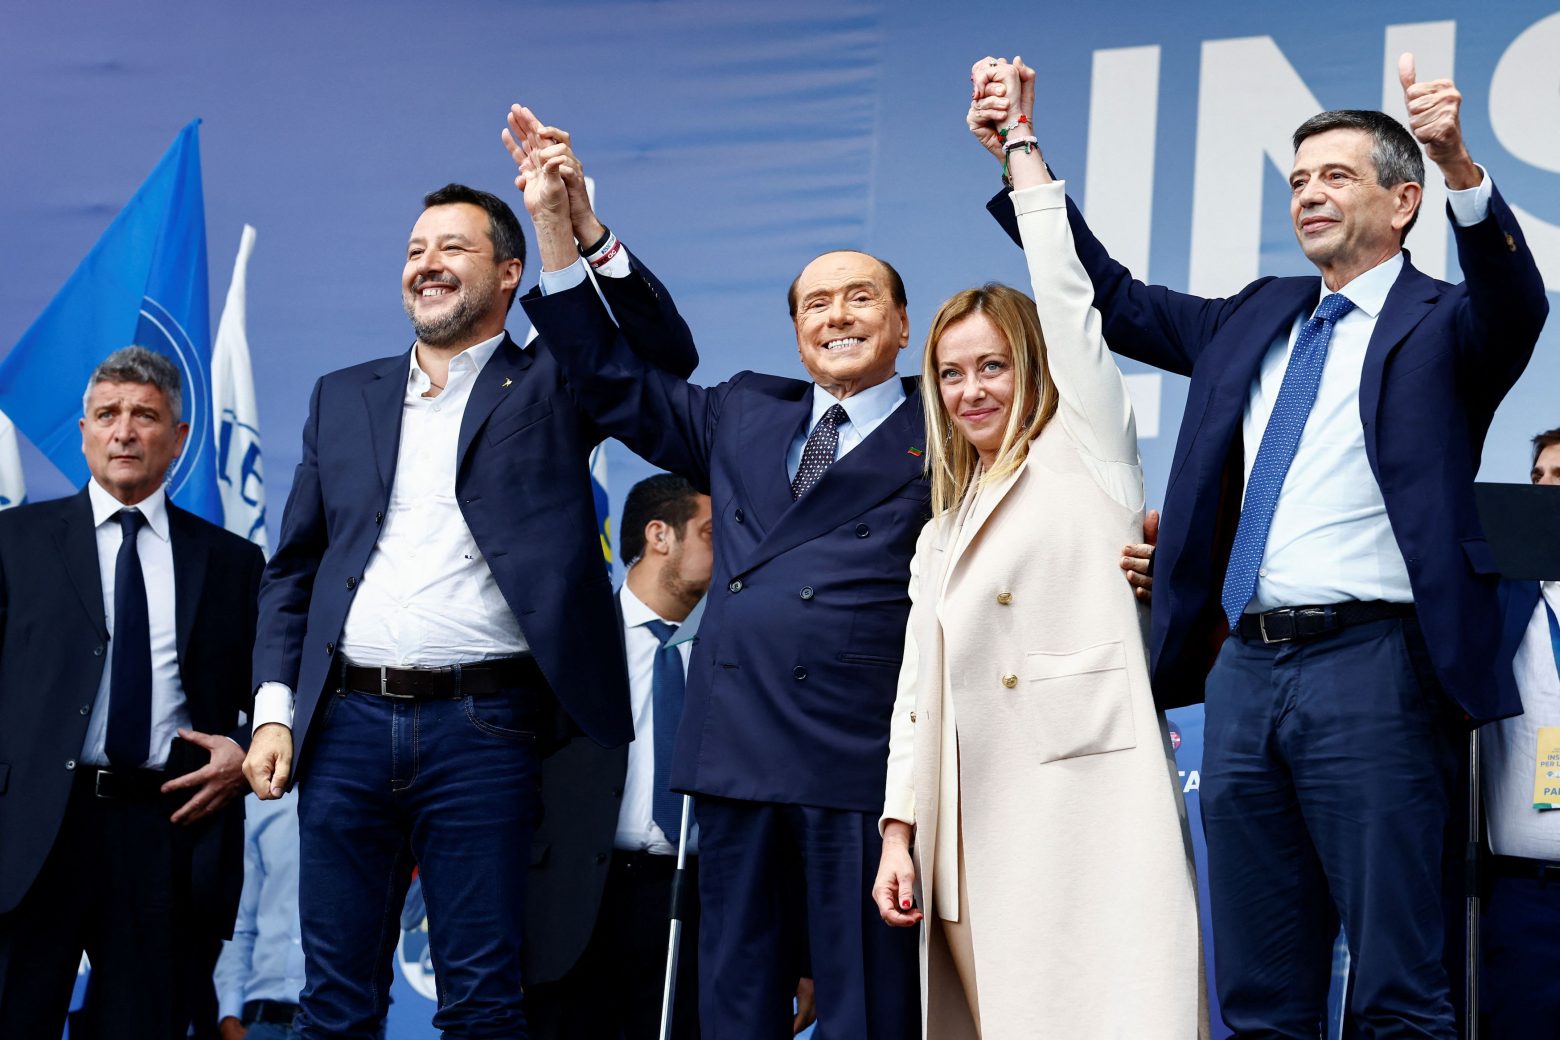 Ιταλία: Η δεξιά παράταξη επέλεξε τους υποψήφιους που θα στηρίξει για την προεδρία Βουλής και Γερουσίας